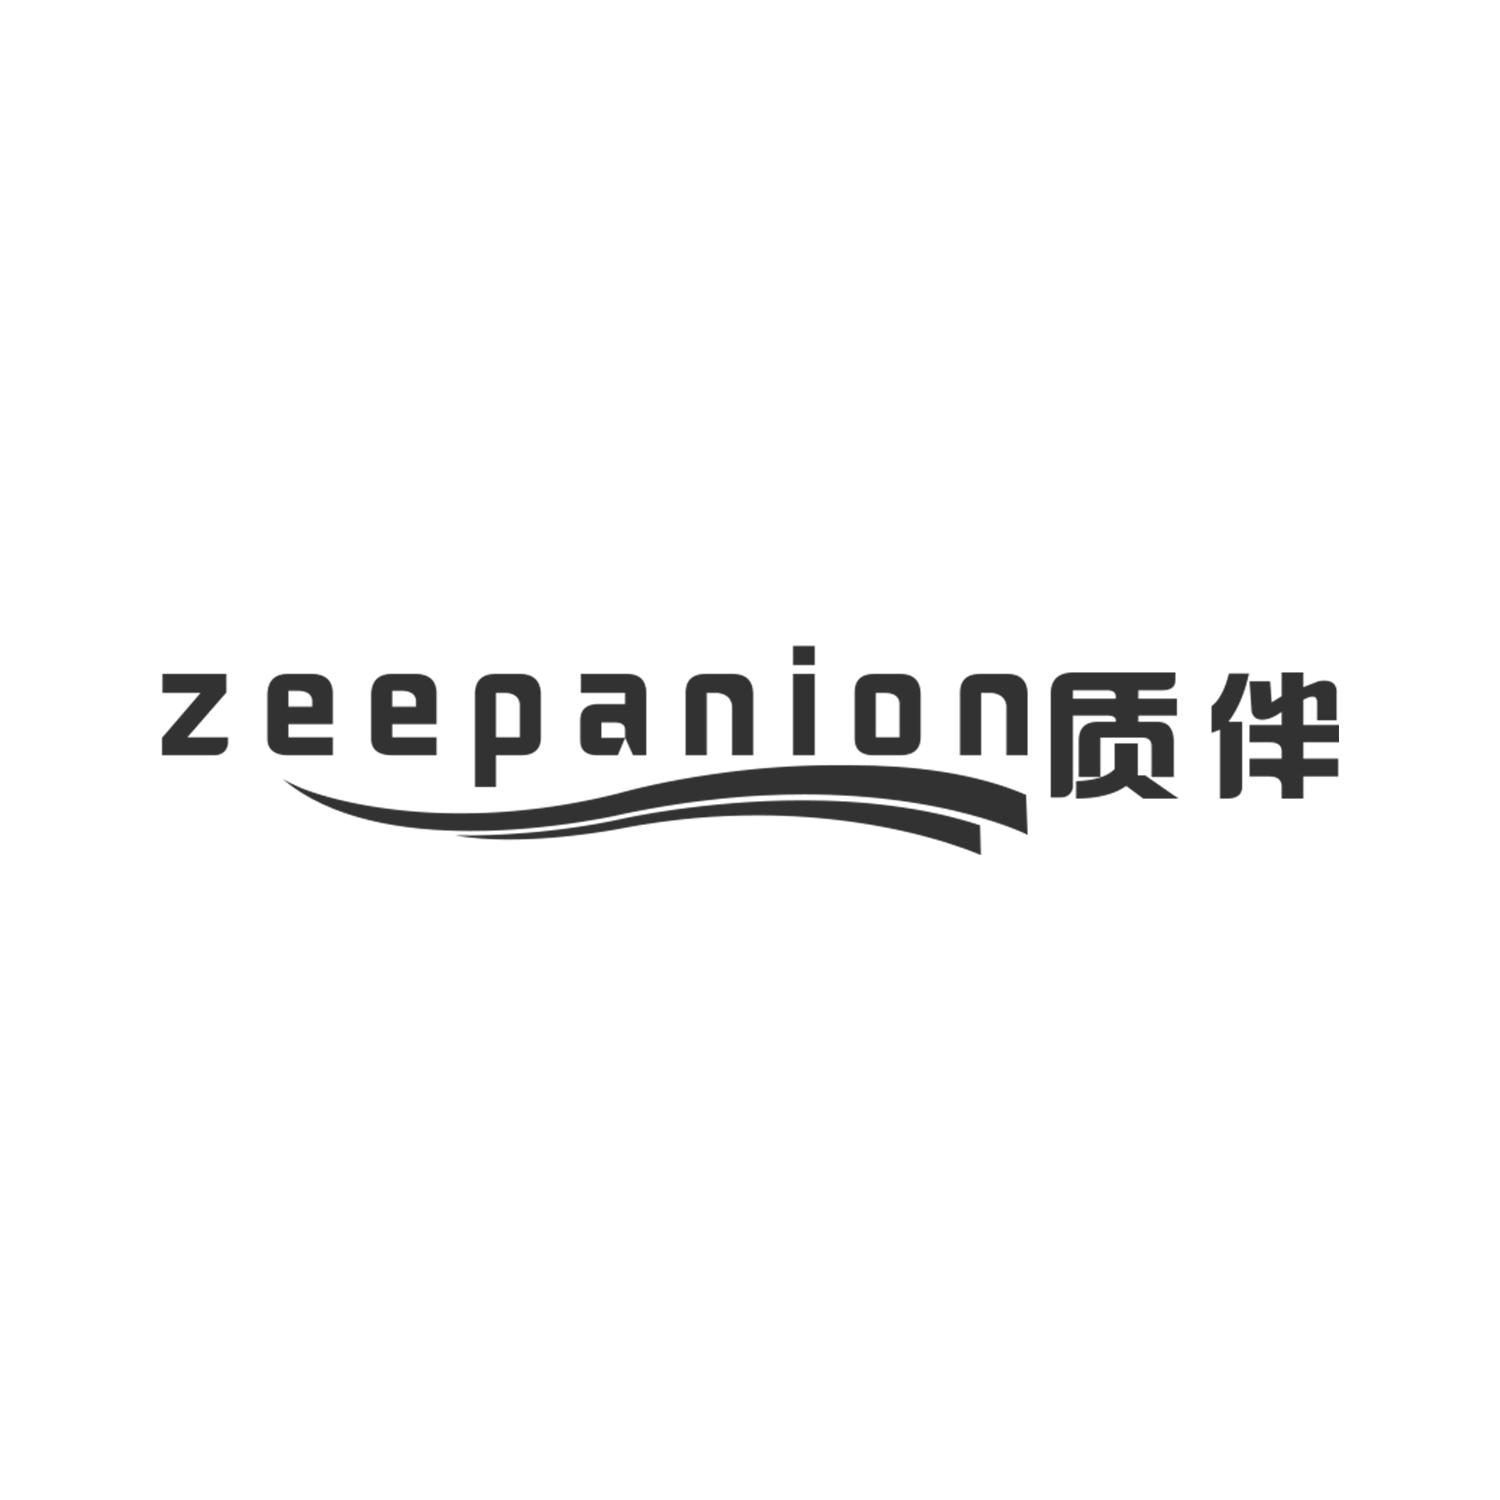 06类-金属材料质伴 ZEEPANION商标转让